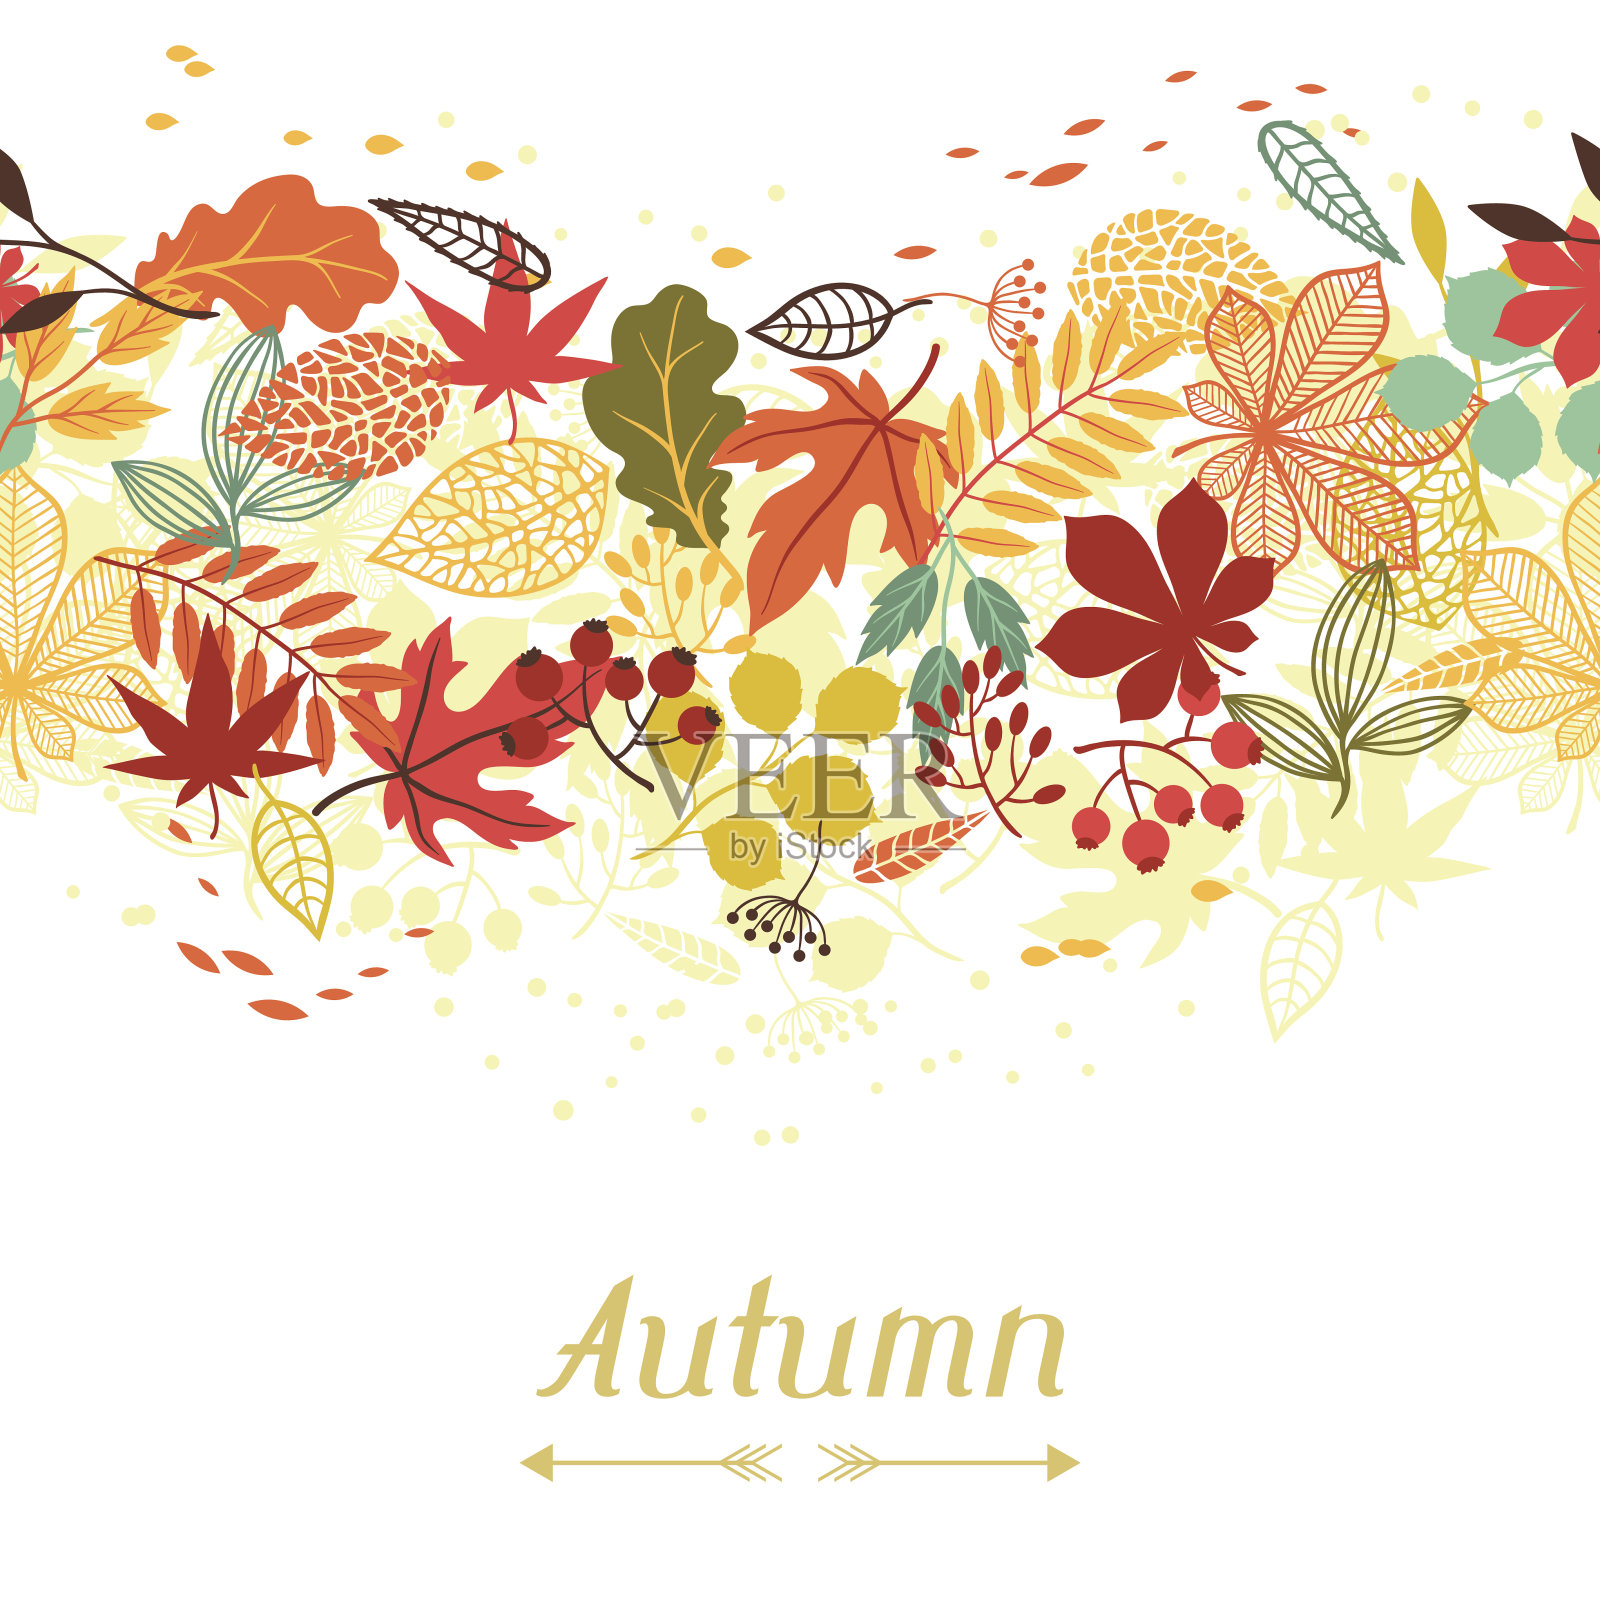 背景风格化的秋叶贺卡。插画图片素材